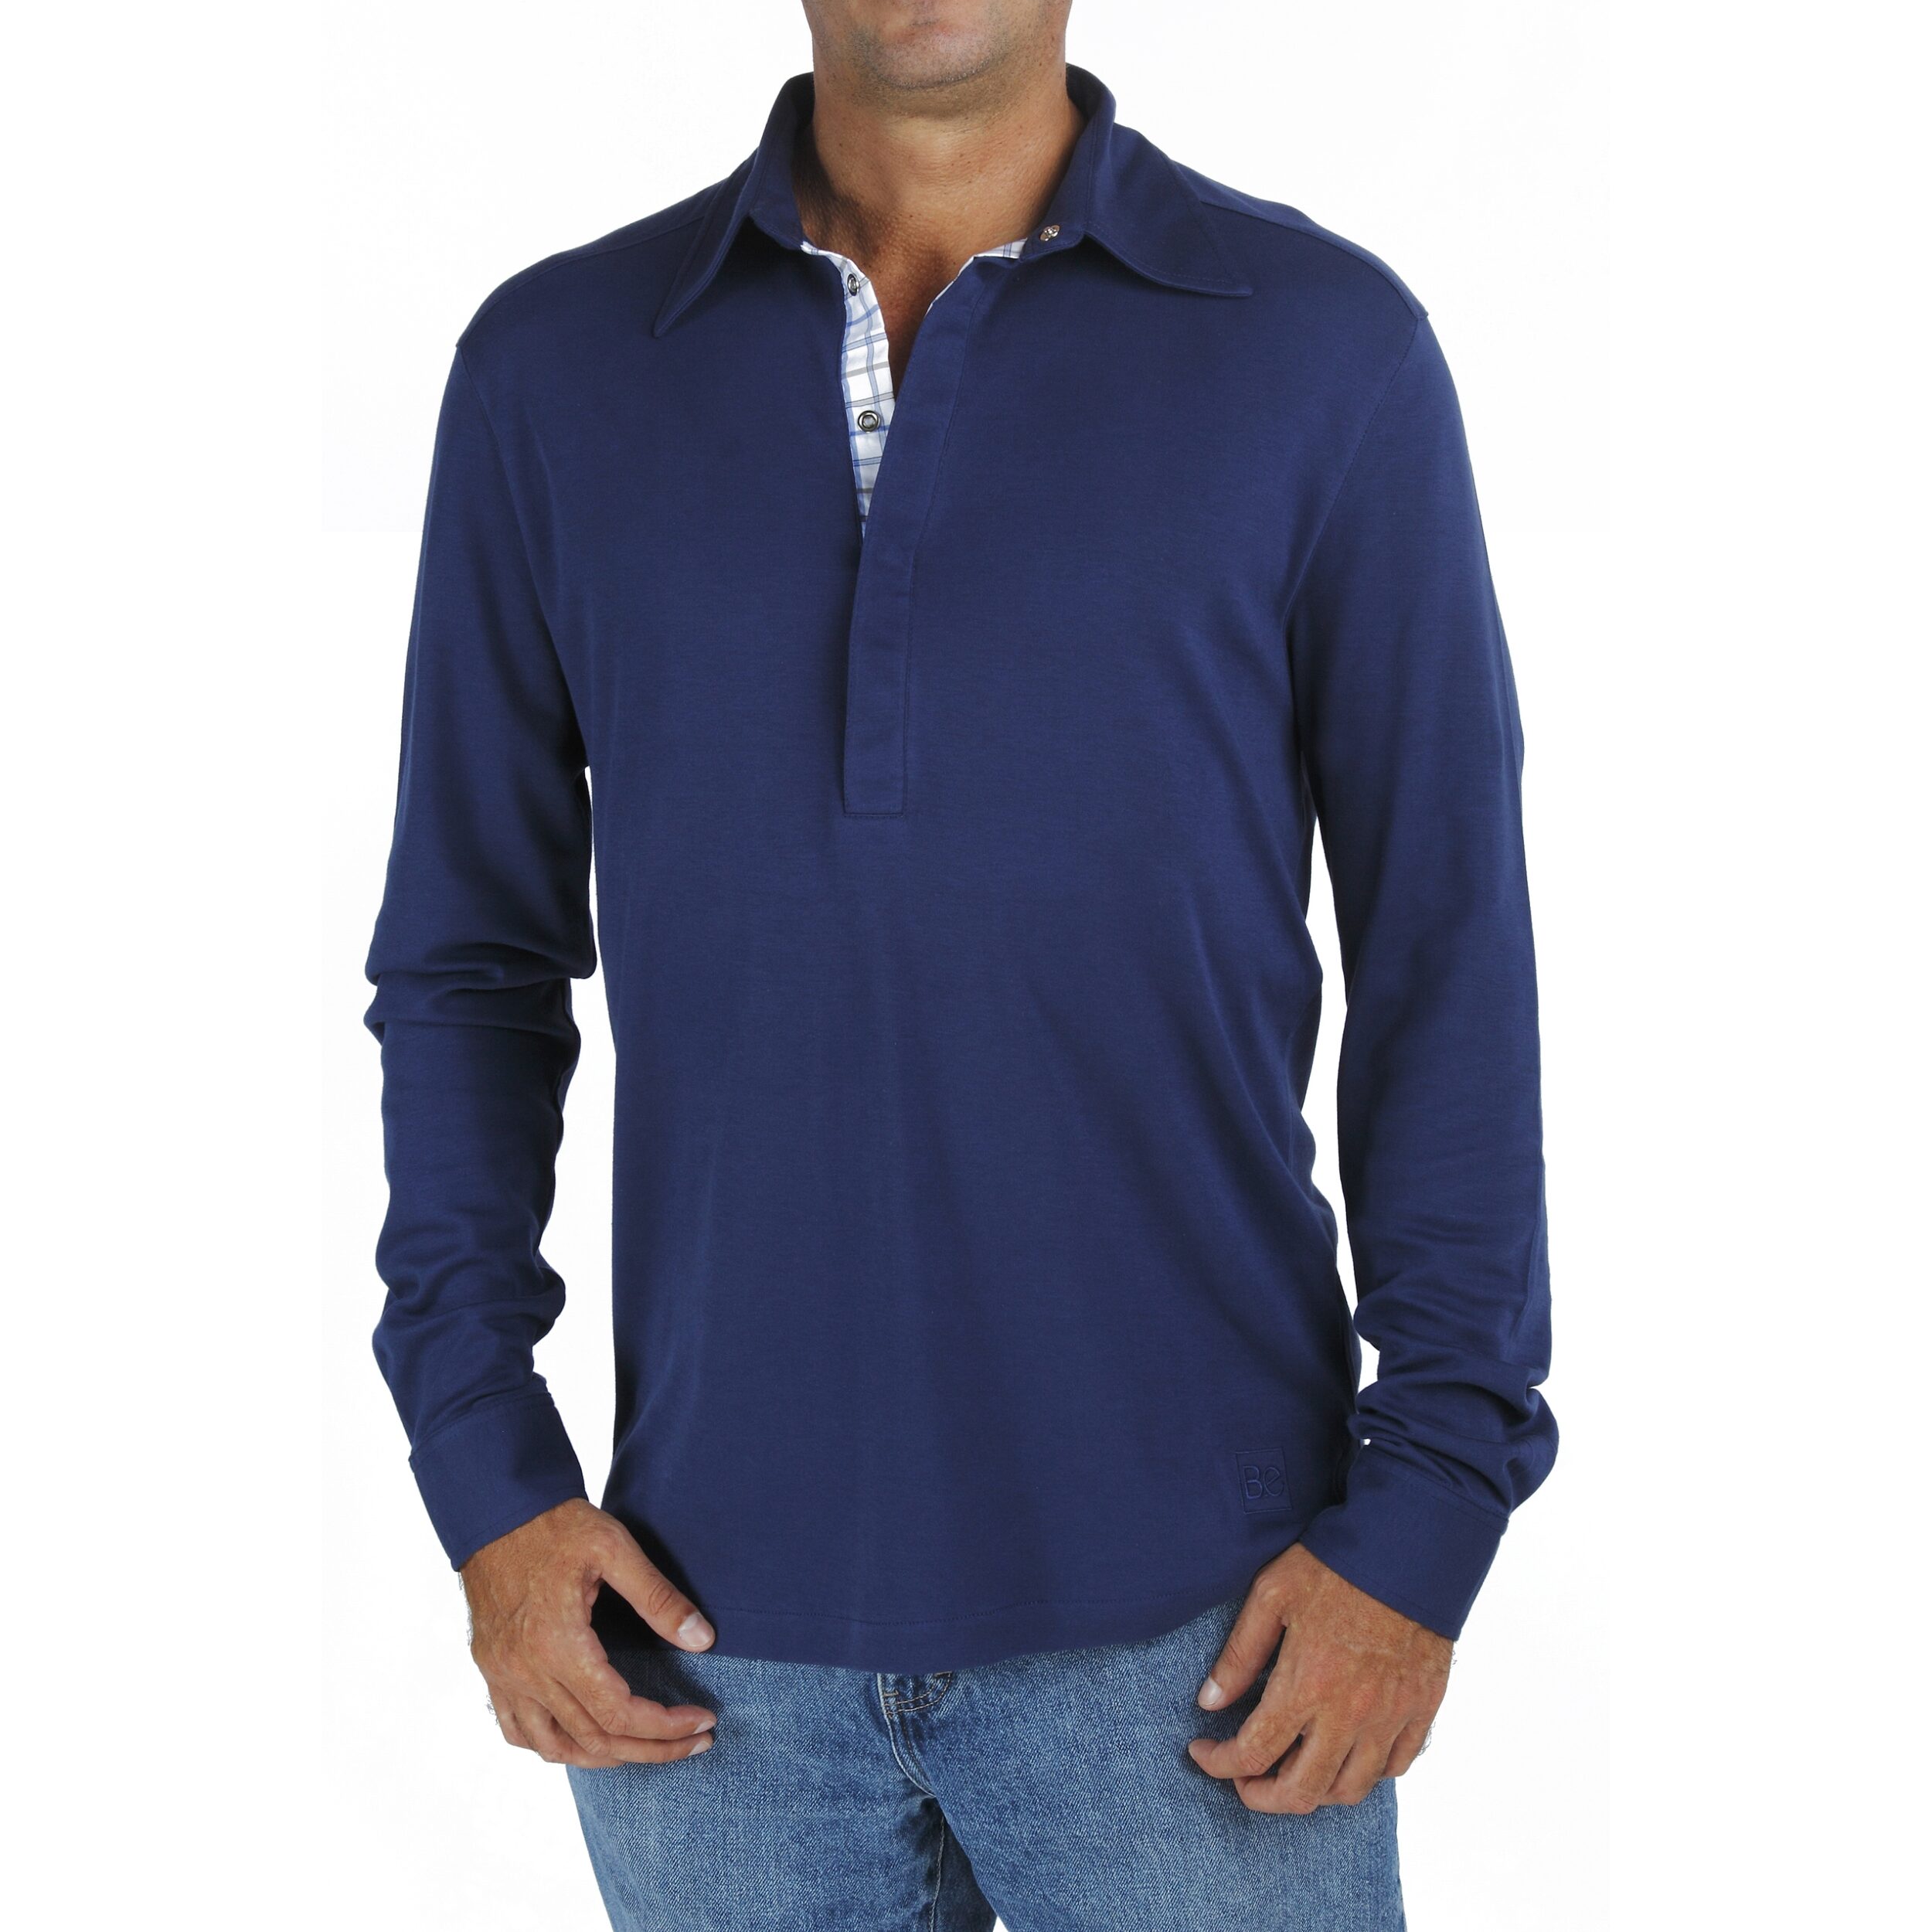 Long Sleeve Polo tshirt men organic pima cotton slowfashion quality Black